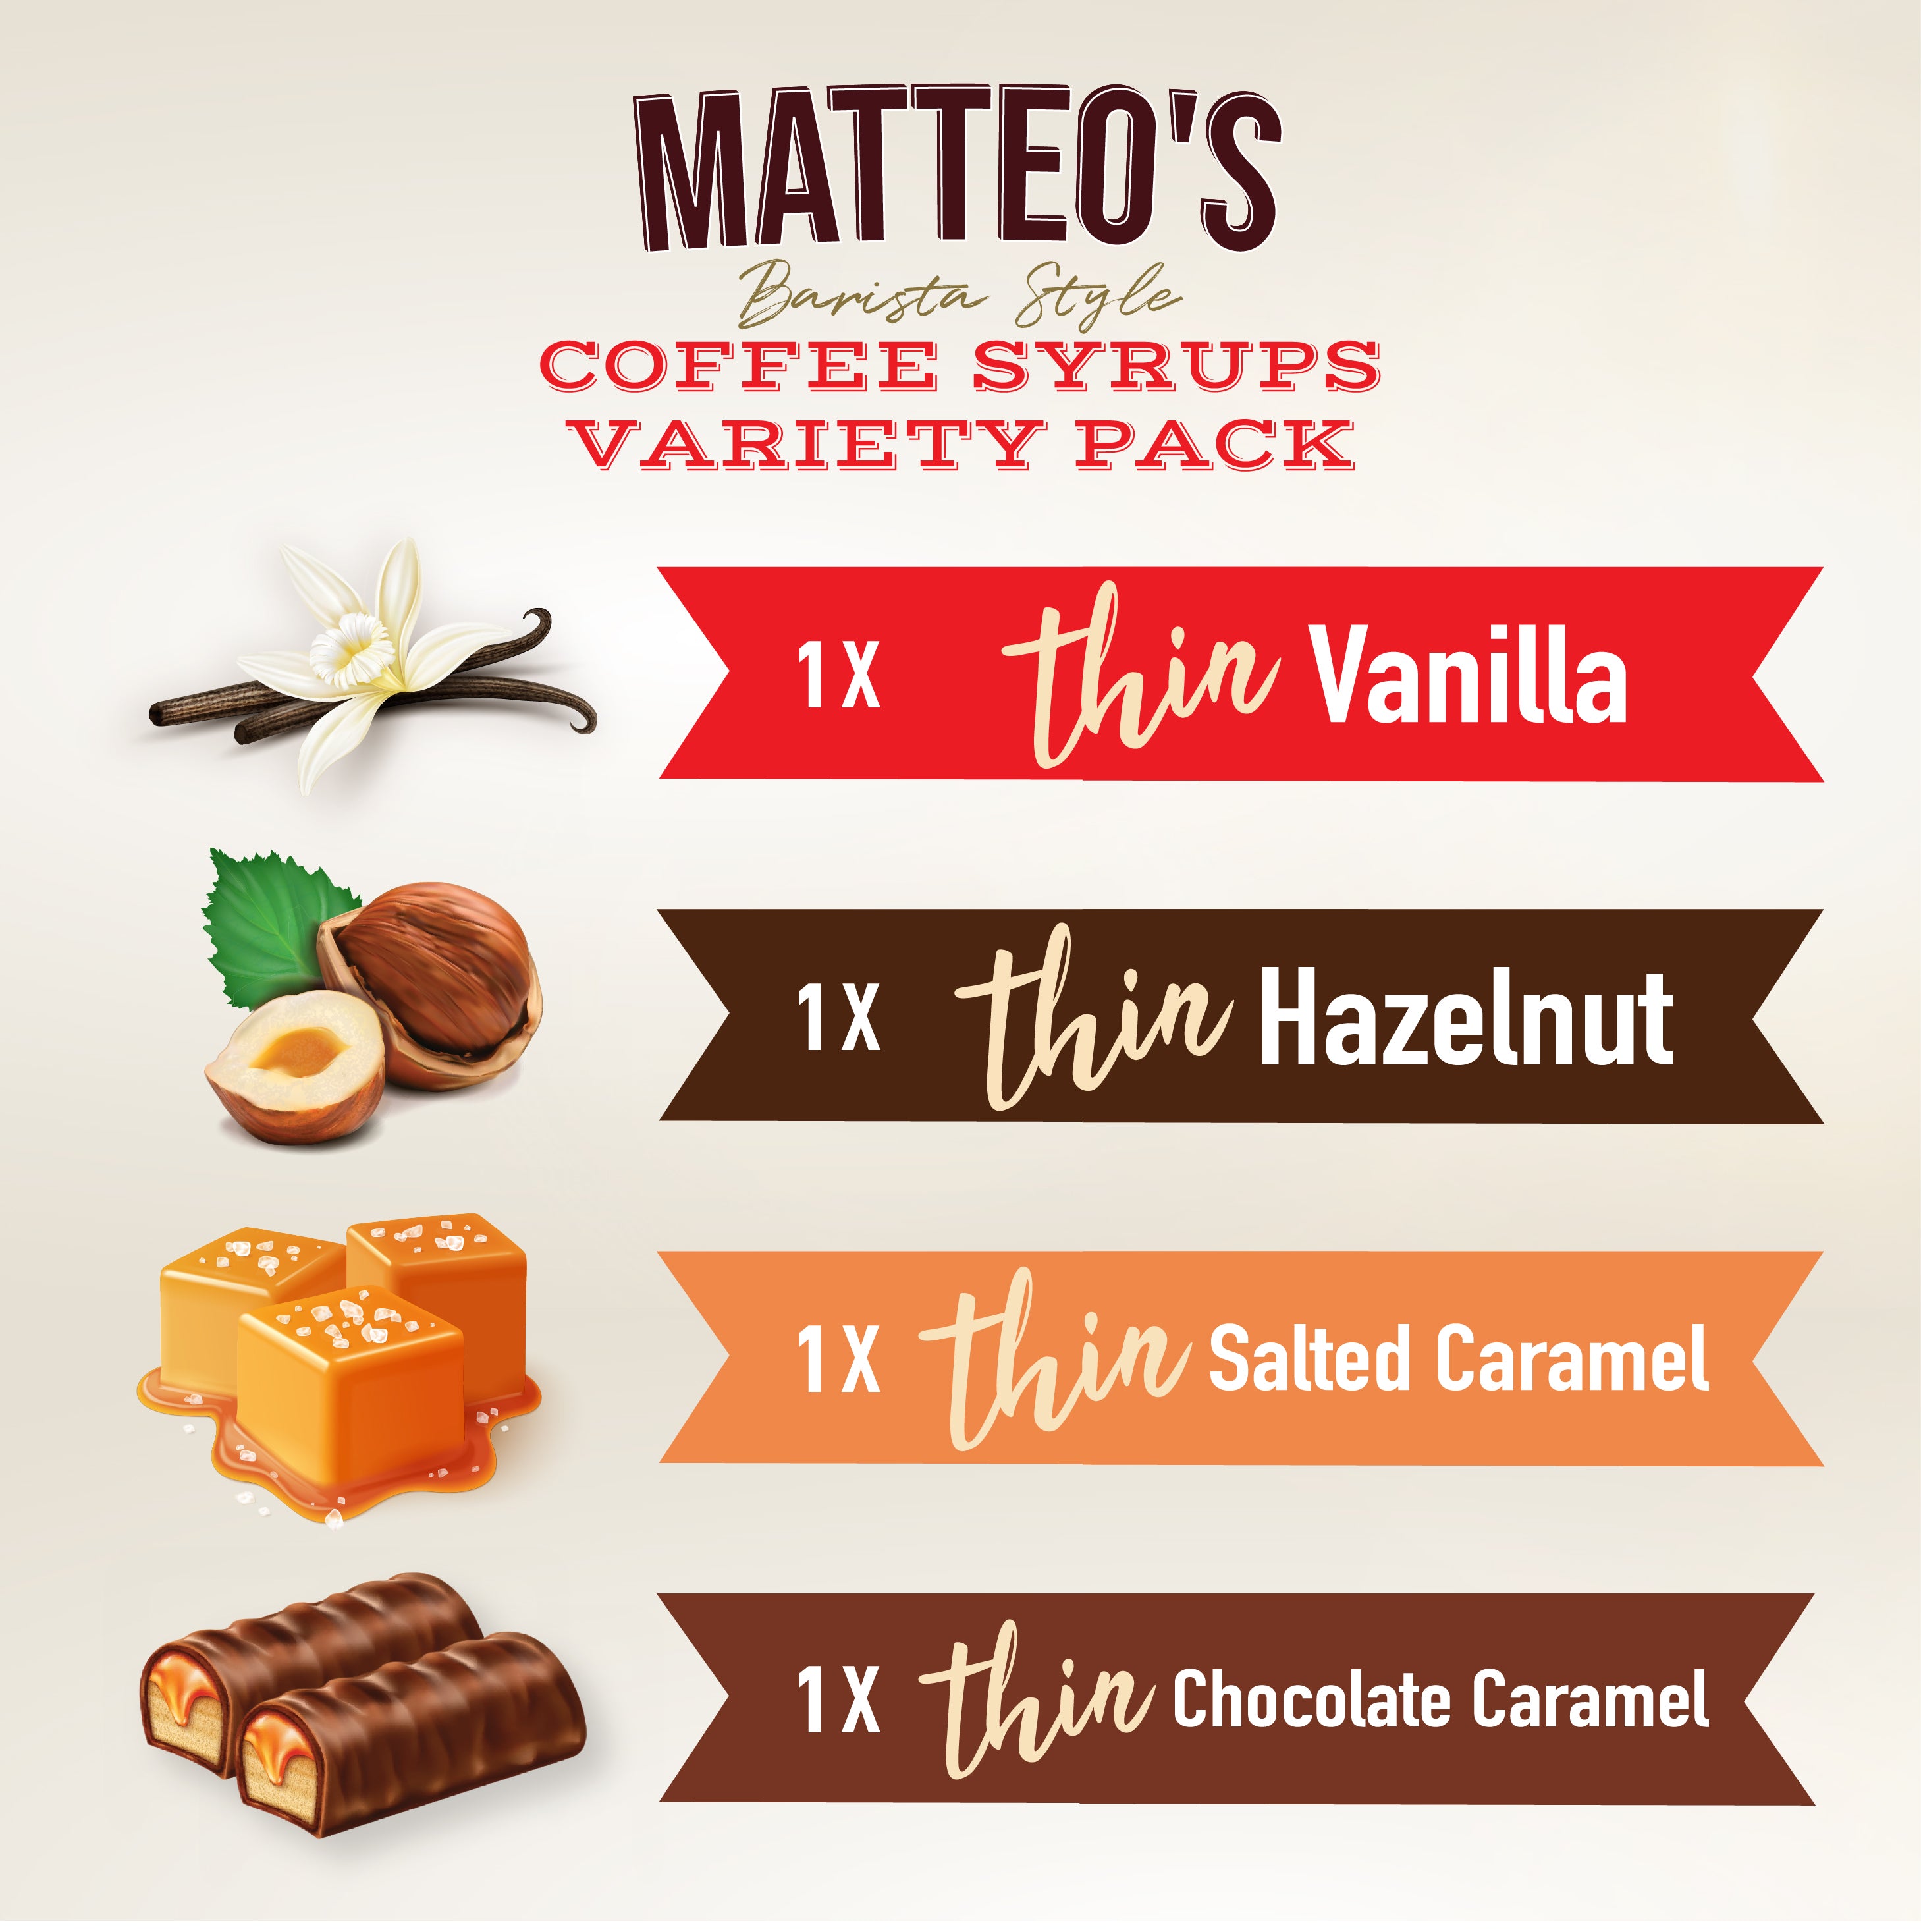 Matteo's Sirop aromatisant pour café sans sucre, moka, délicieux